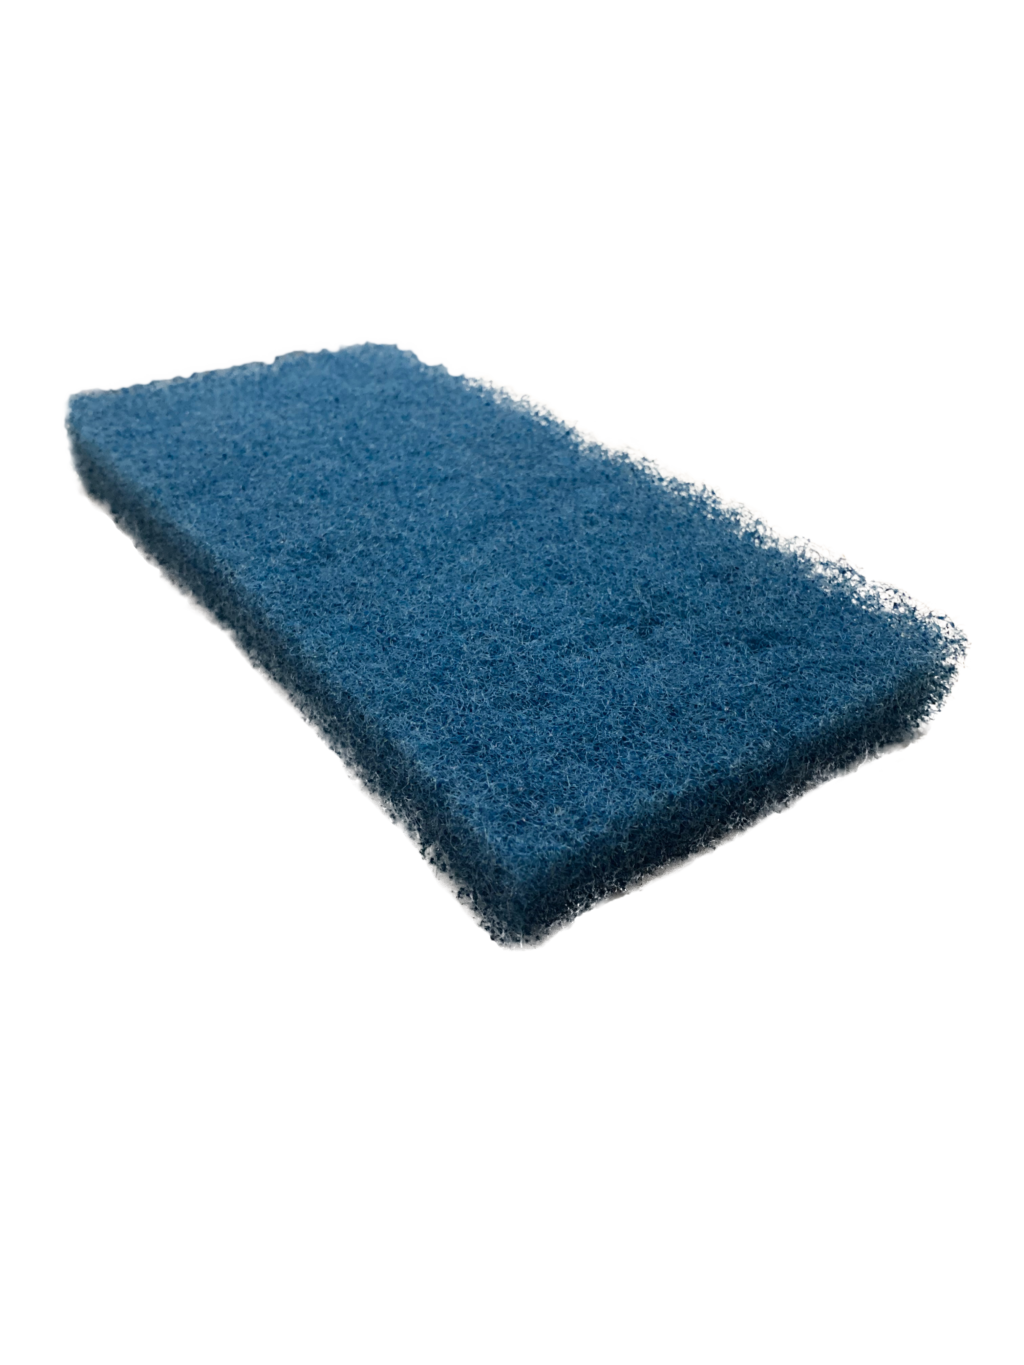 Blue Sponges Transparent Images